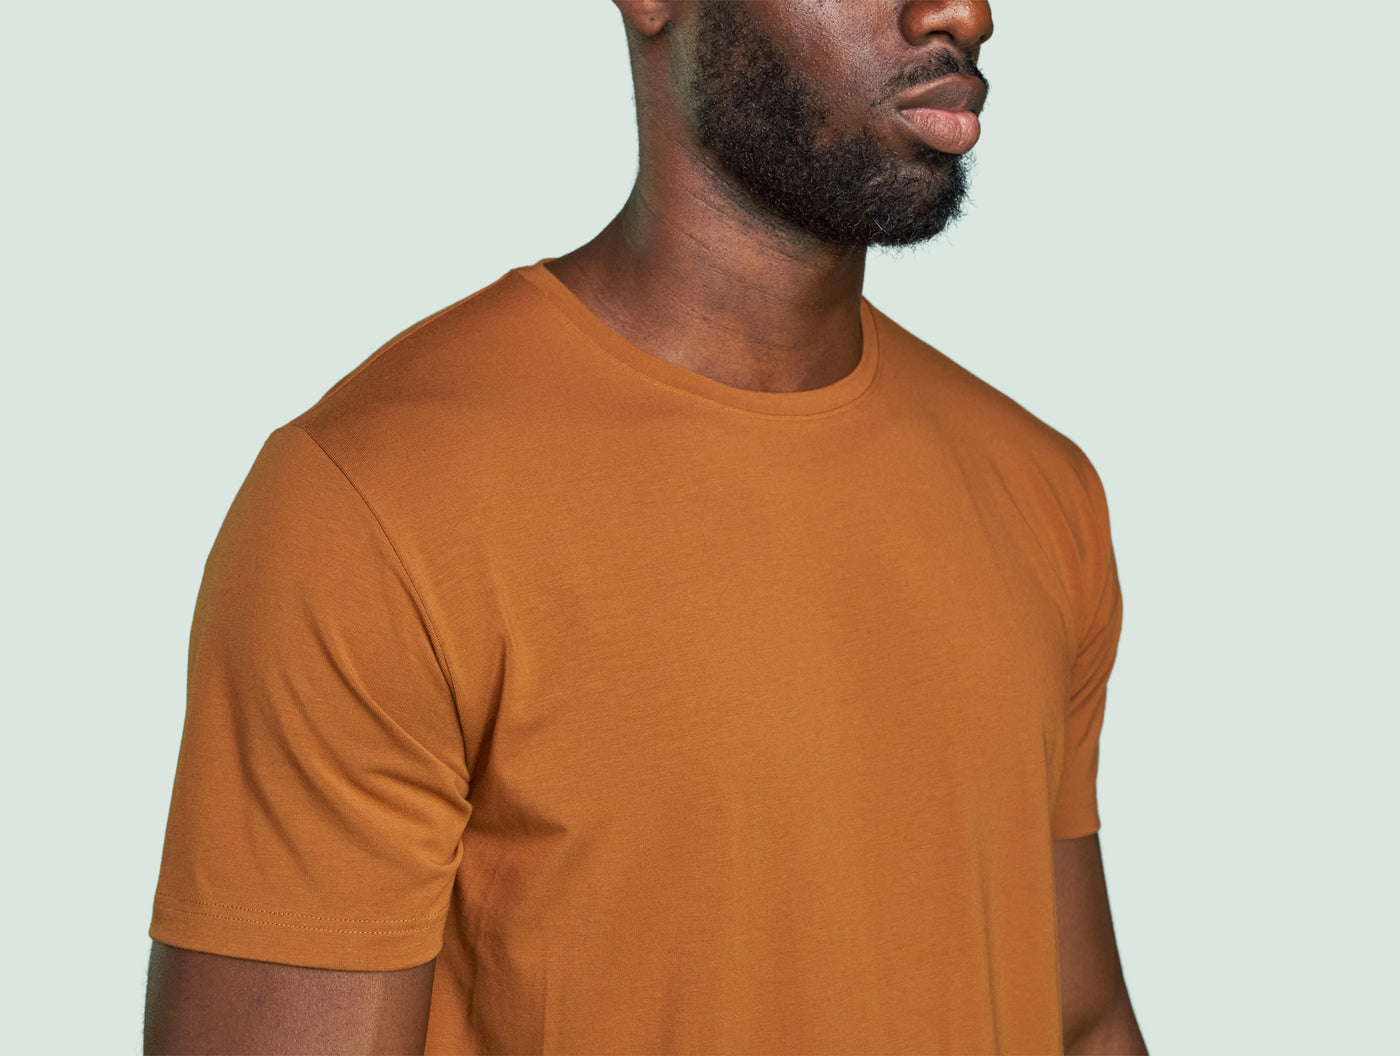 Pétrone T-shirt manches courtes coton pima micromodal ocre homme#couleur_ocre